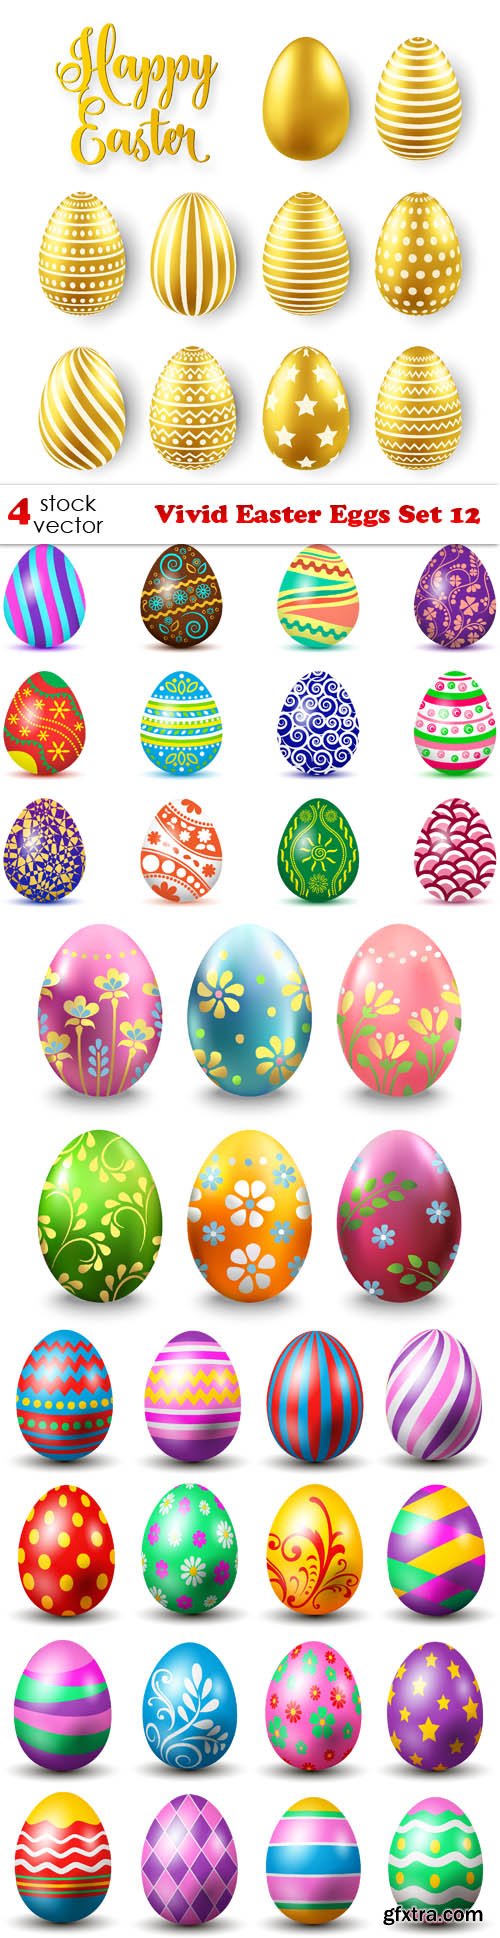 Vectors - Vivid Easter Eggs Set 12